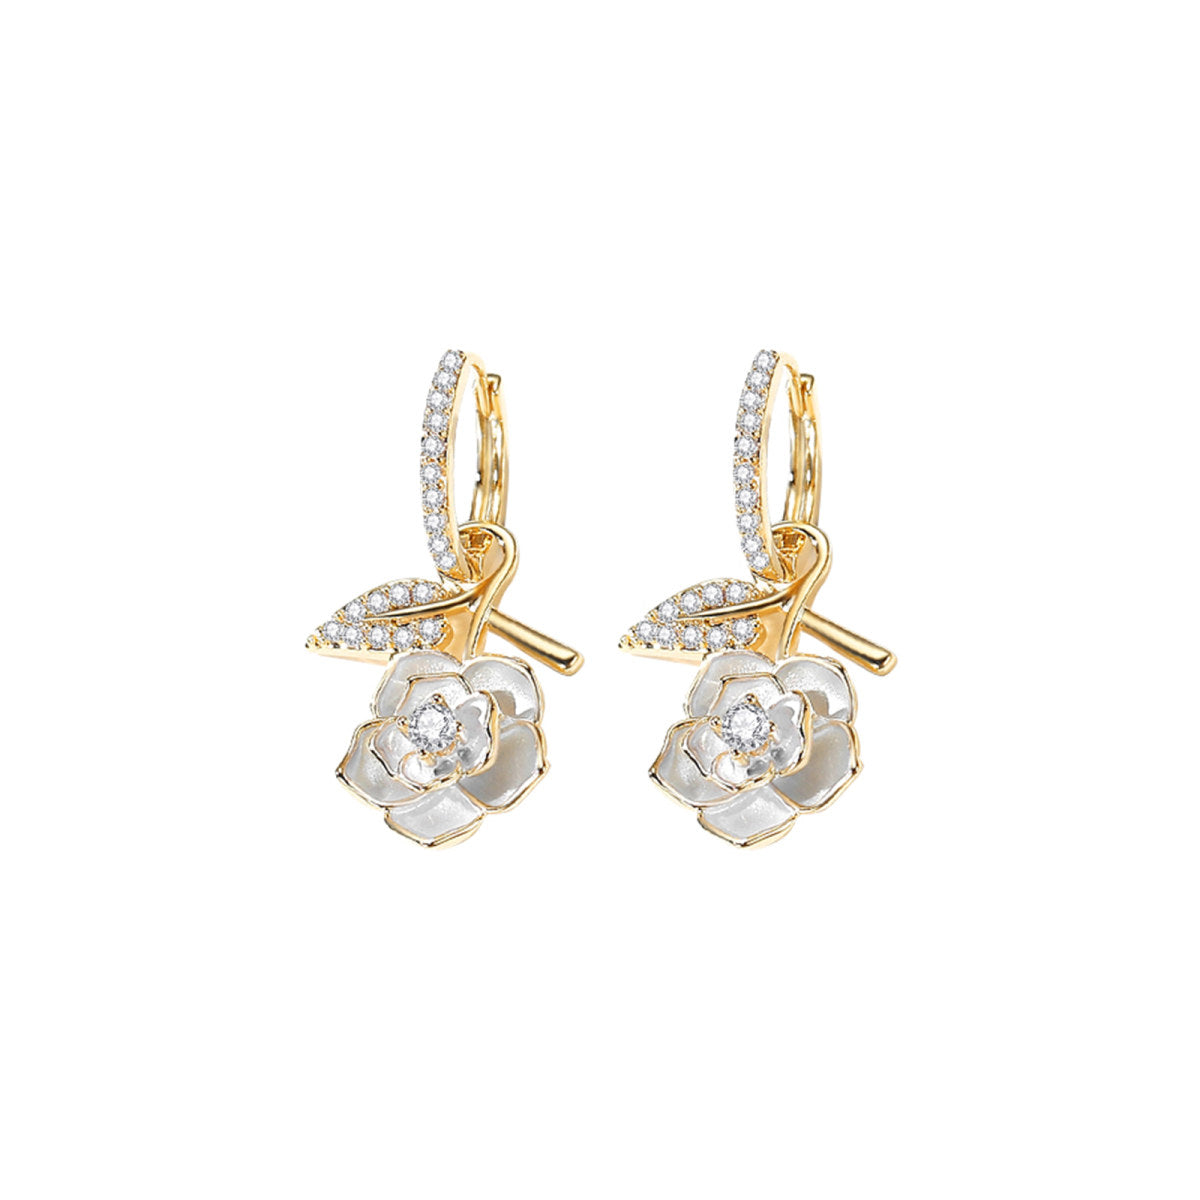 Stunning Camellia Gold Earrings